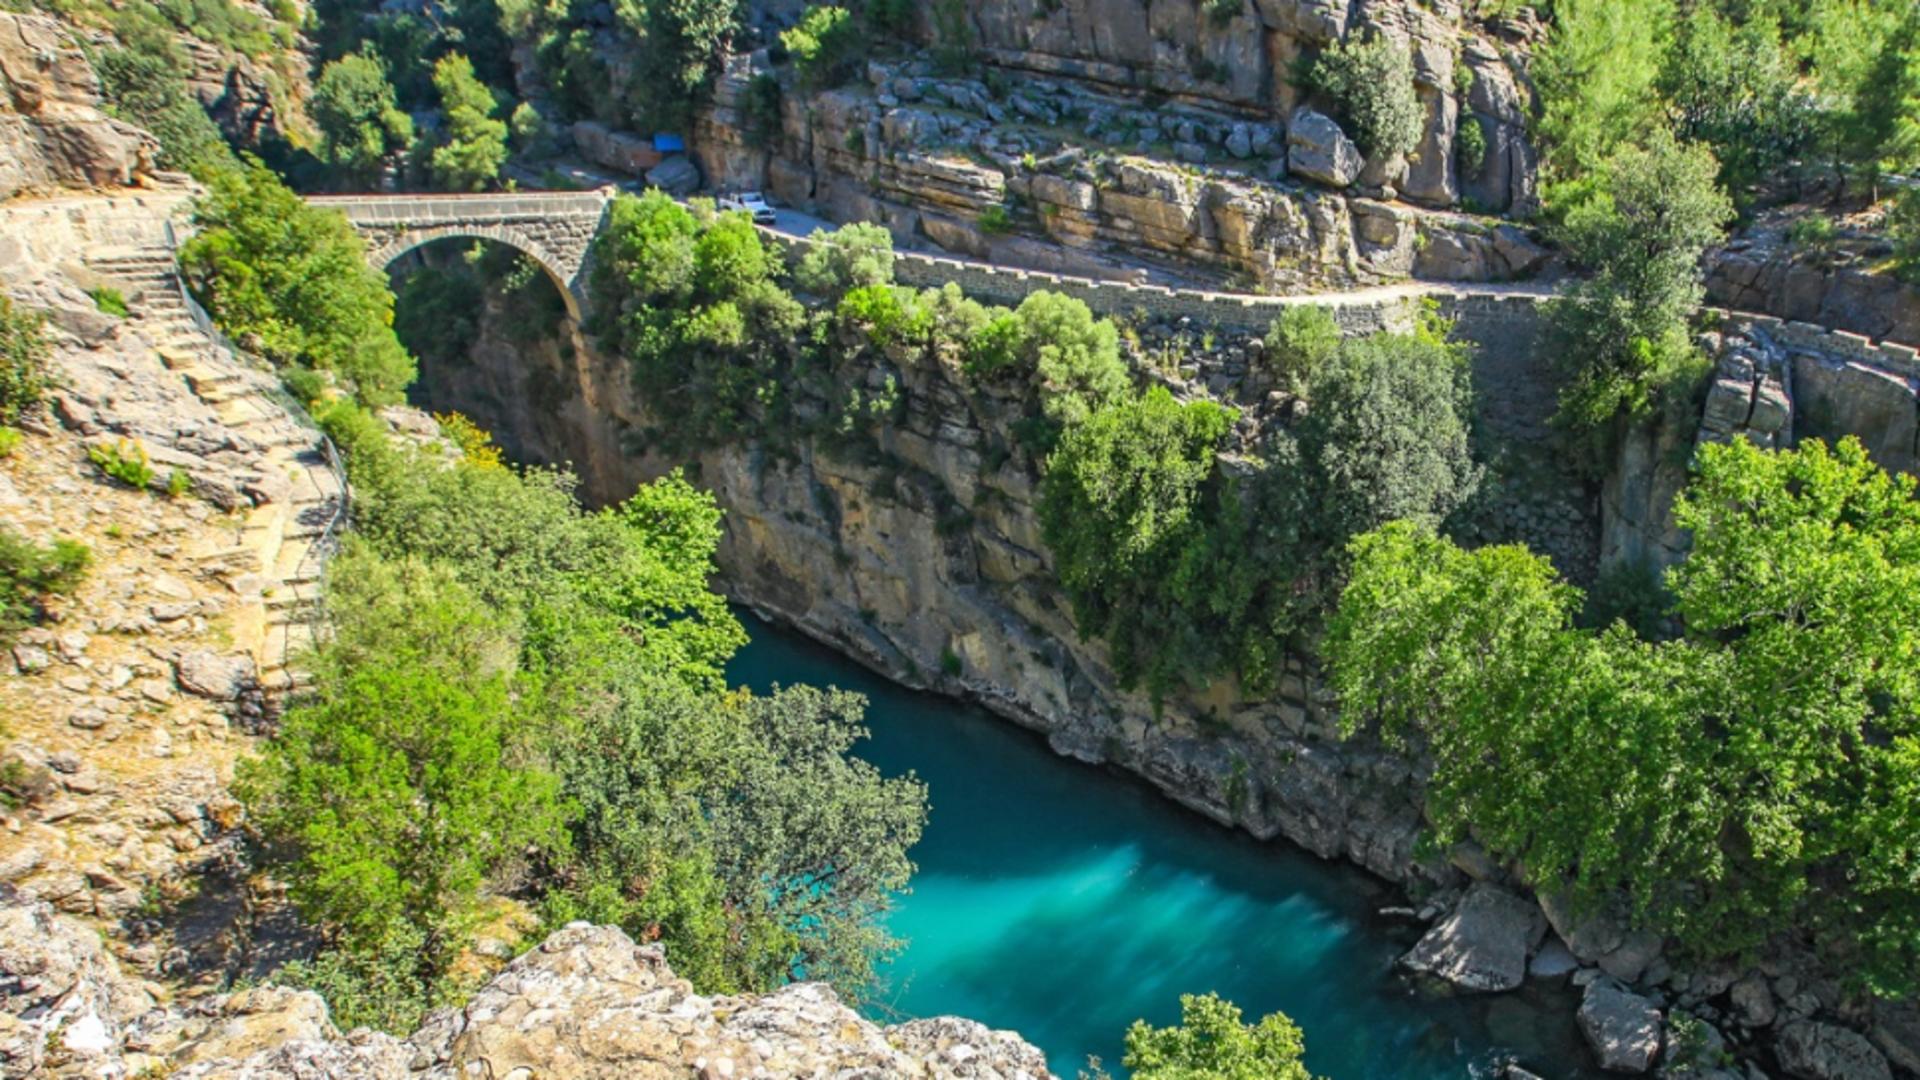 Canioanele din Turcia - magnet pentru turiștii care își doresc vacanțe pline de aventură